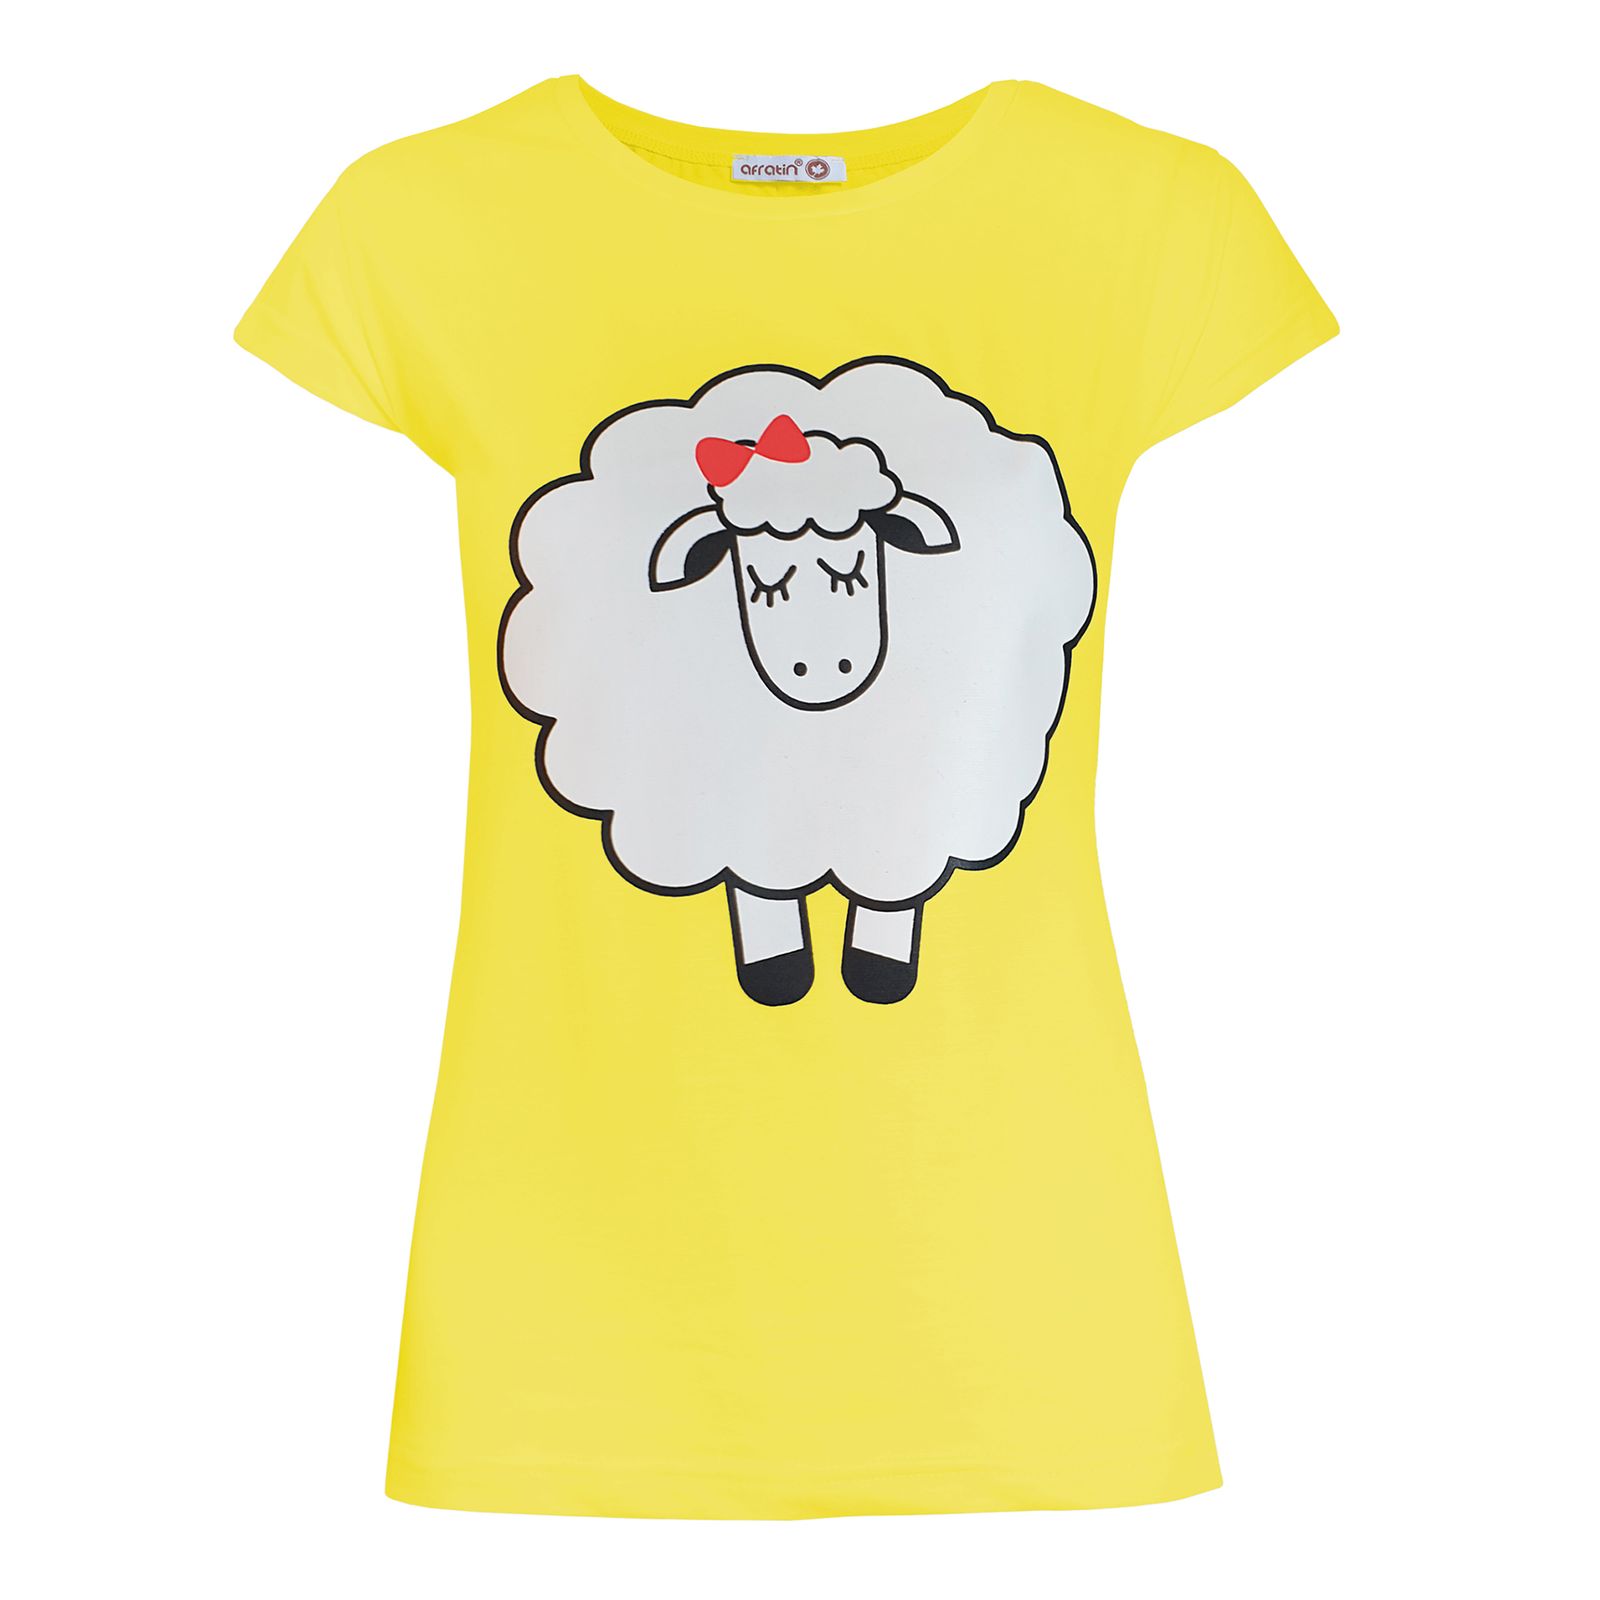 ست تی شرت و شلوارک زنانه افراتین طرح ببعی کد 6539 رنگ زرد -  - 3